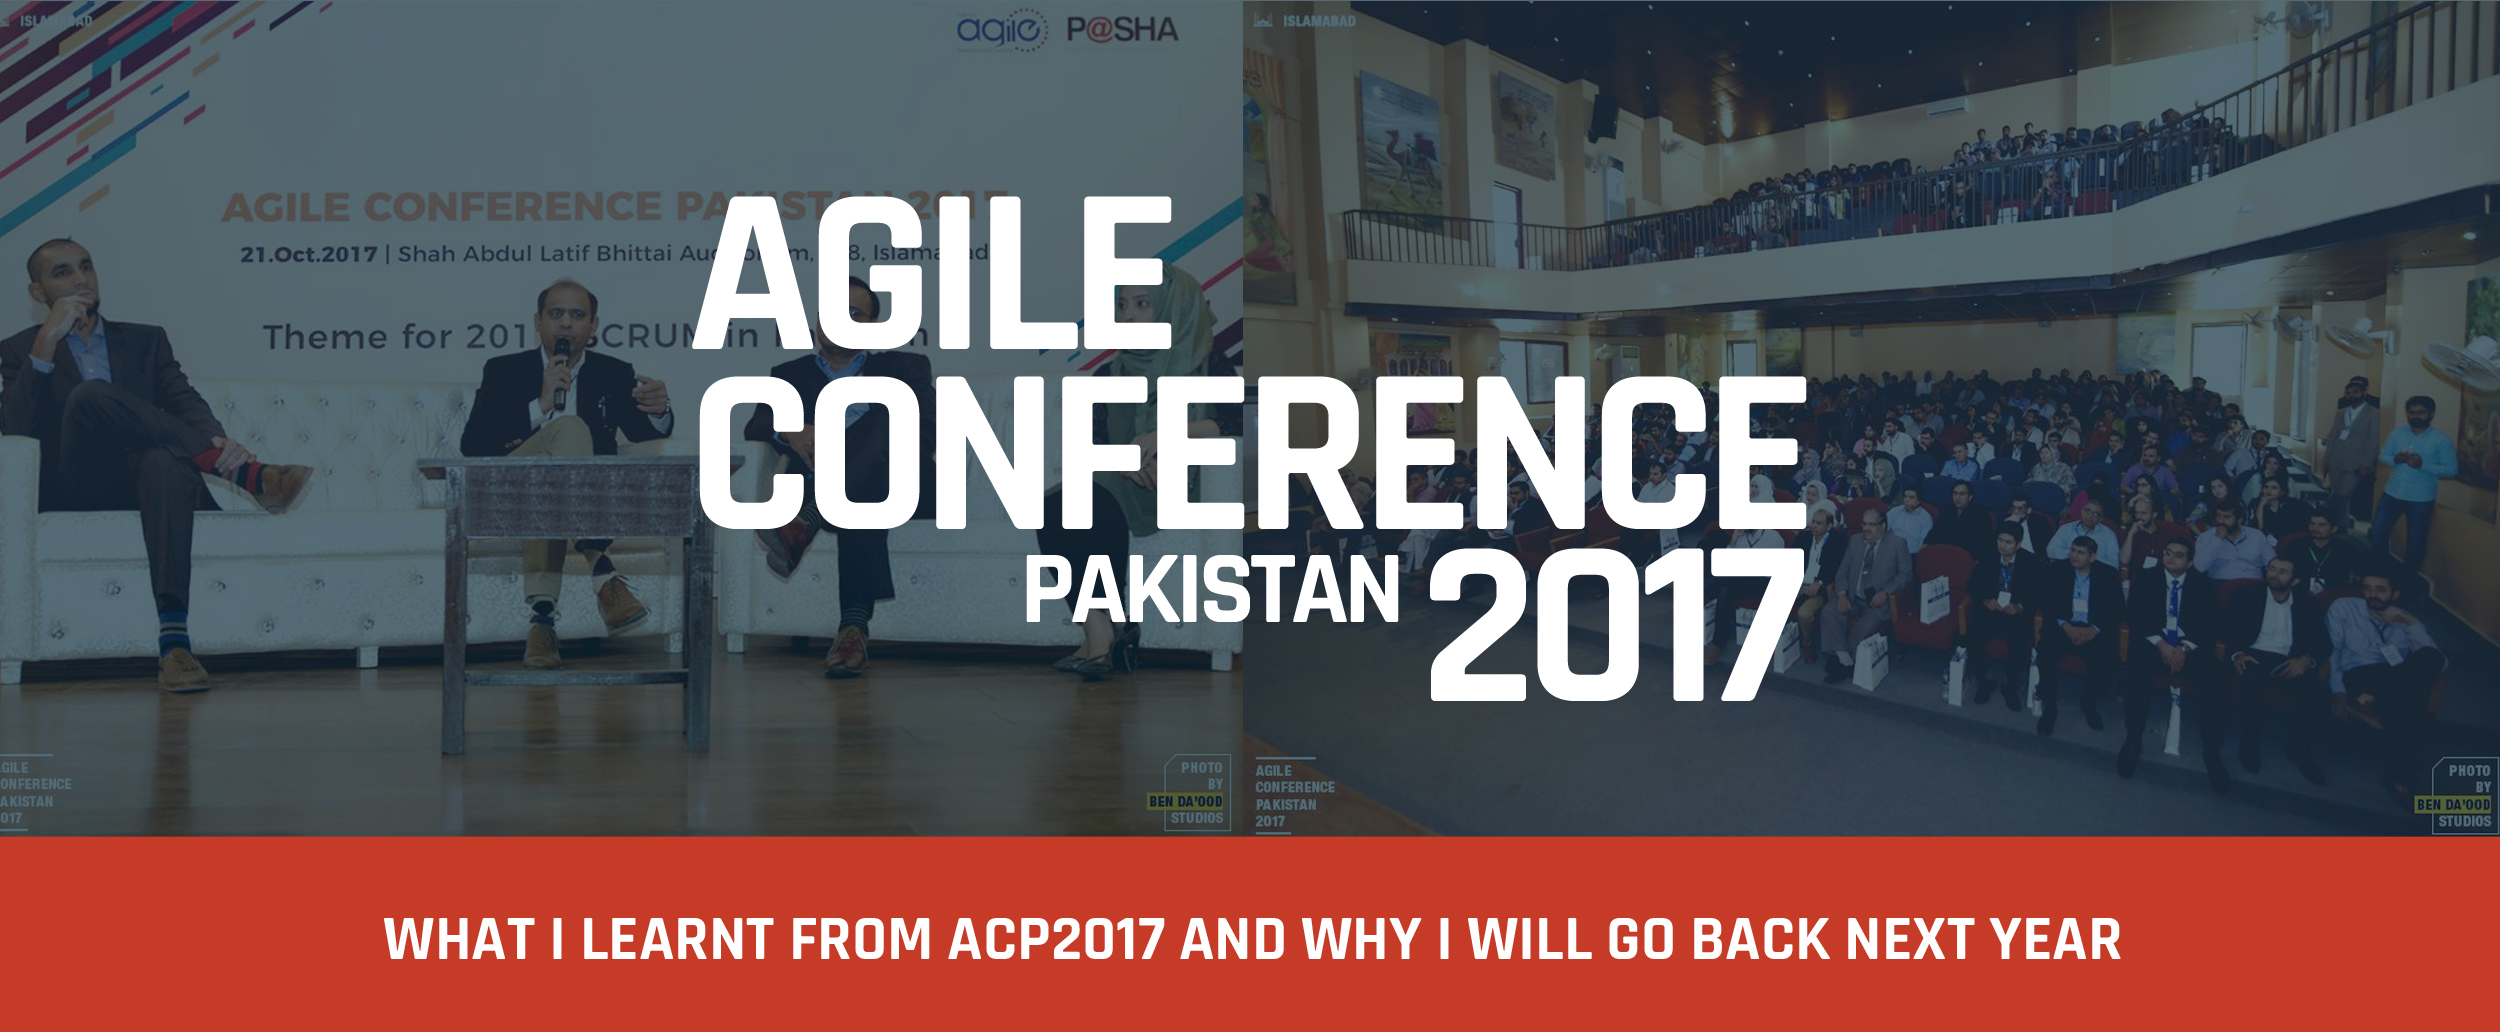 Agile Conference Pakistan